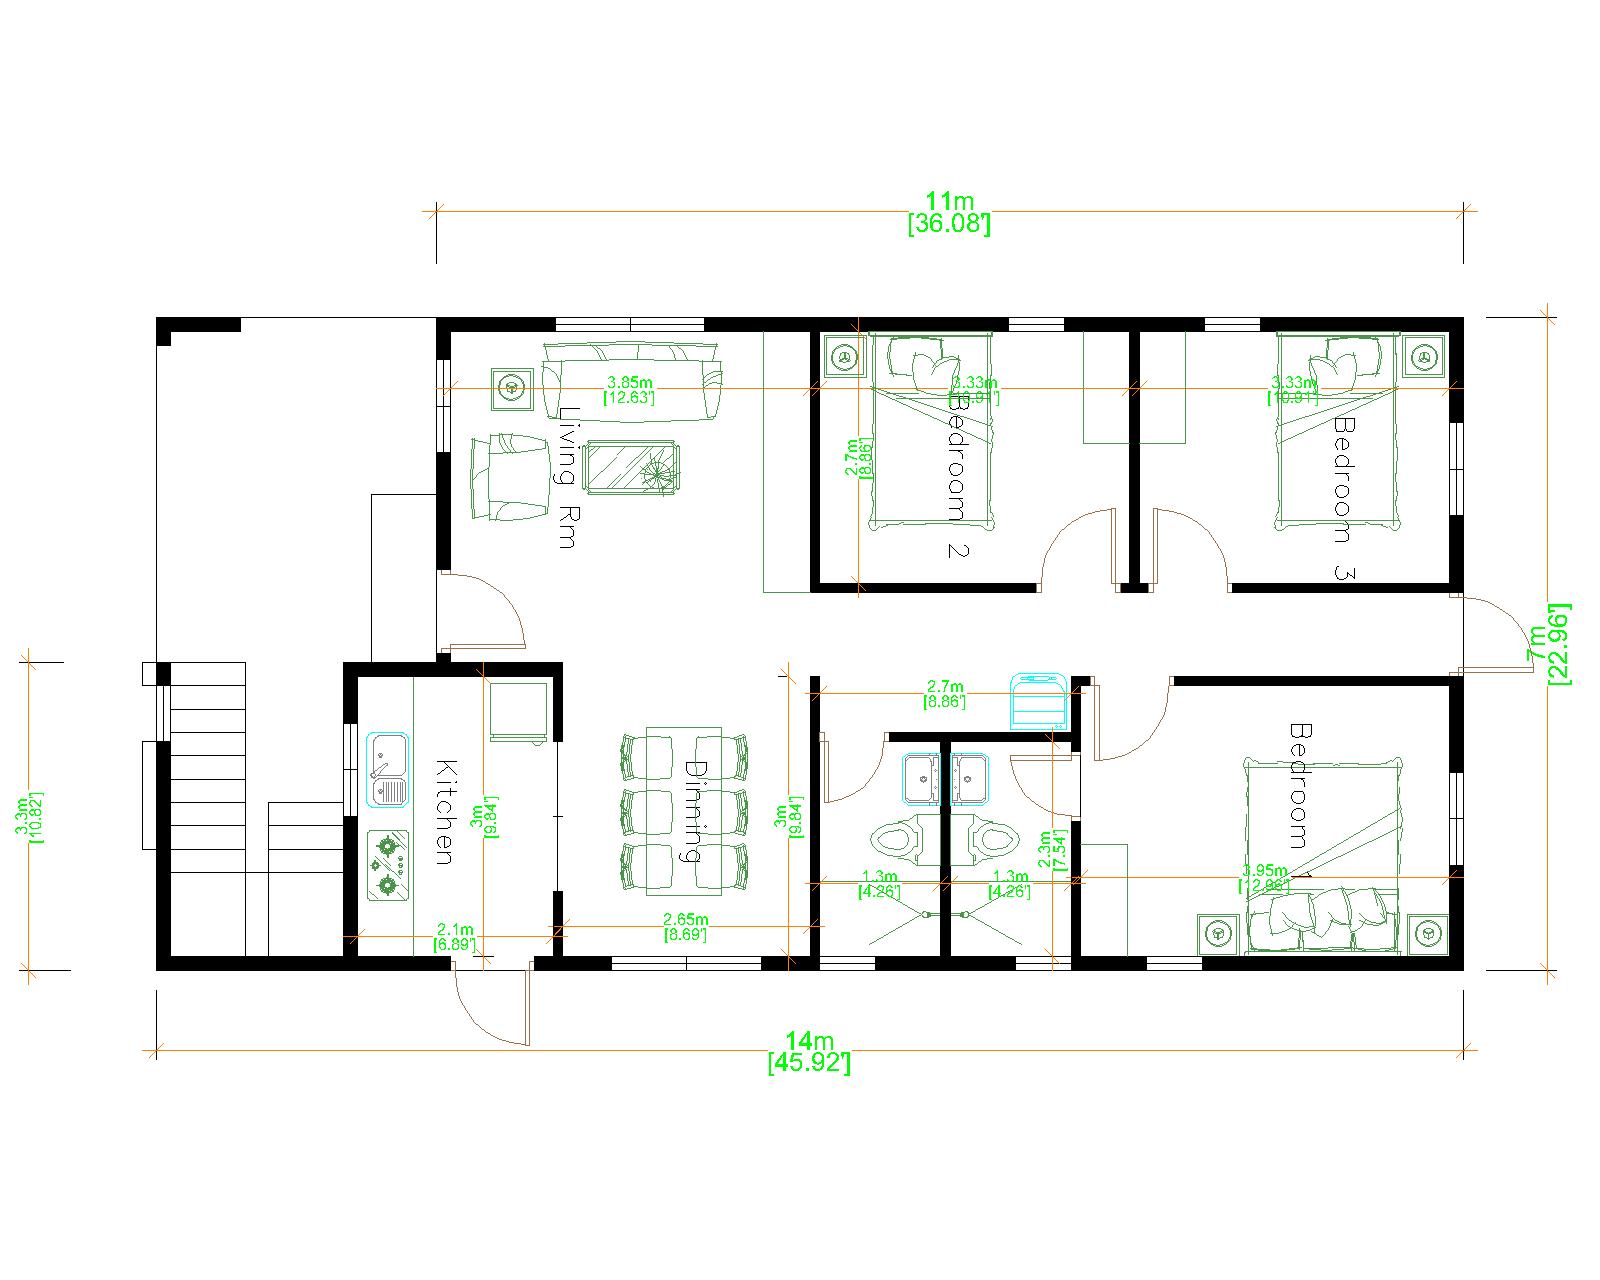 House Design 3d 7x14 Meter 23x46 3 Bedrooms Terrace Roof